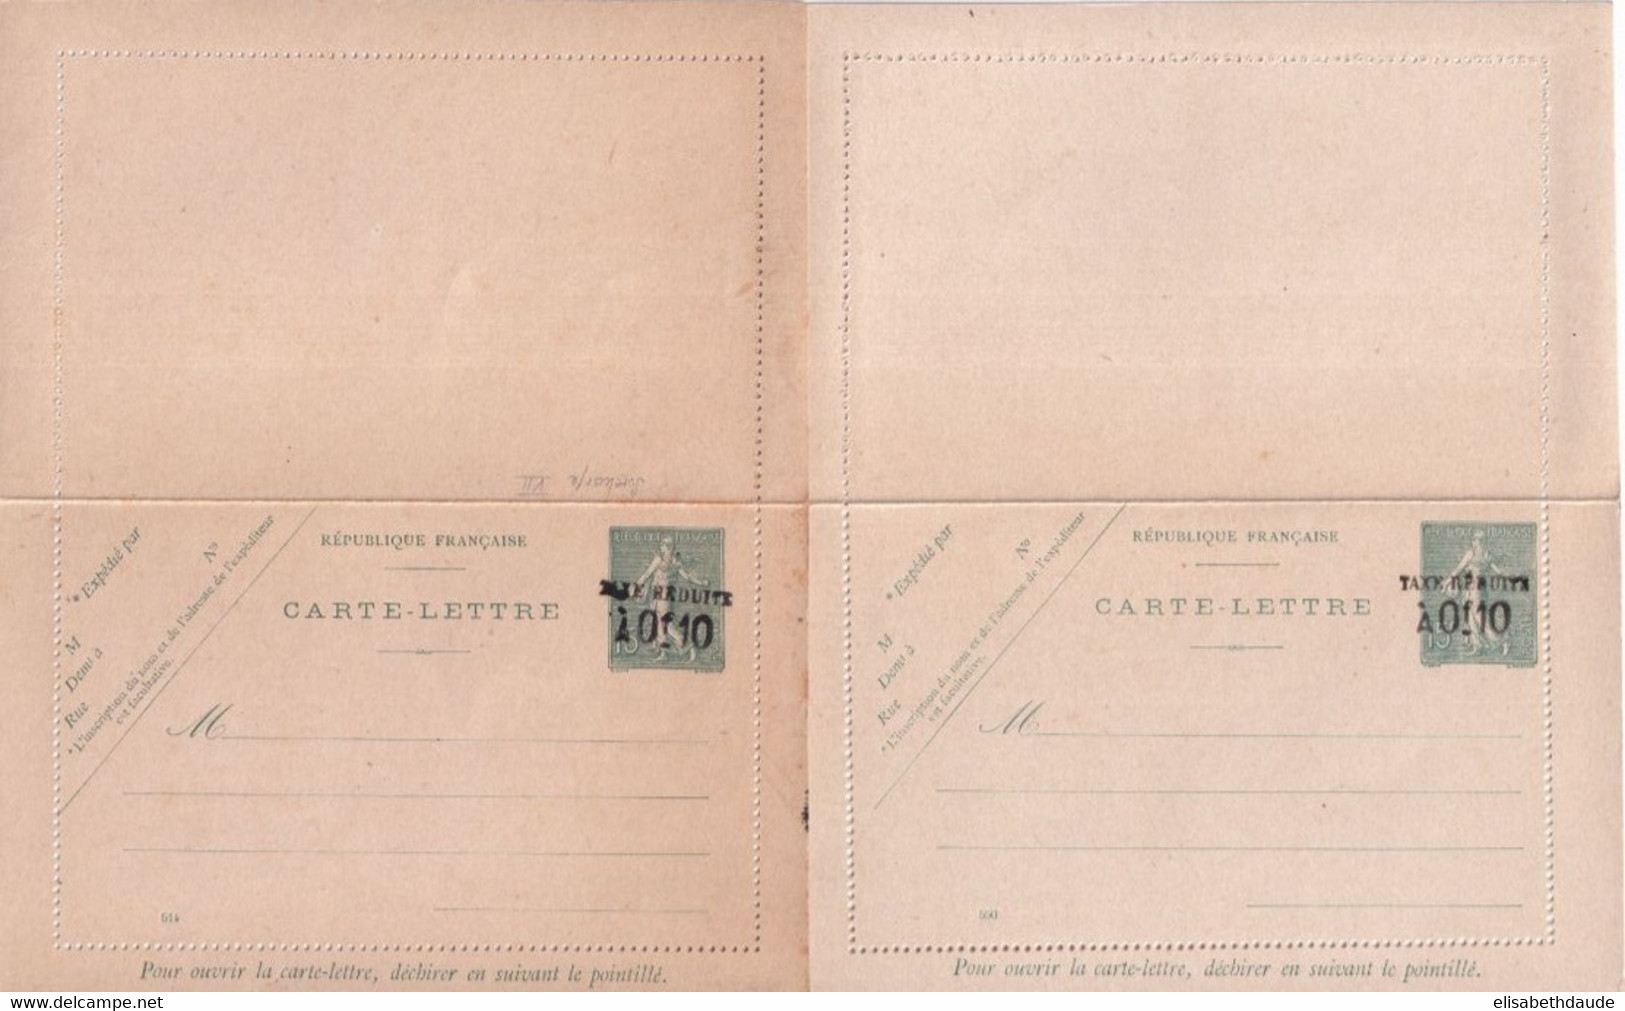 1906 - TYPE SEMEUSE 15c SURCHARGE TAXE REDUITE - 2 CARTE-LETTRES NEUVES DATES 514 ET 550 - Cartes-lettres